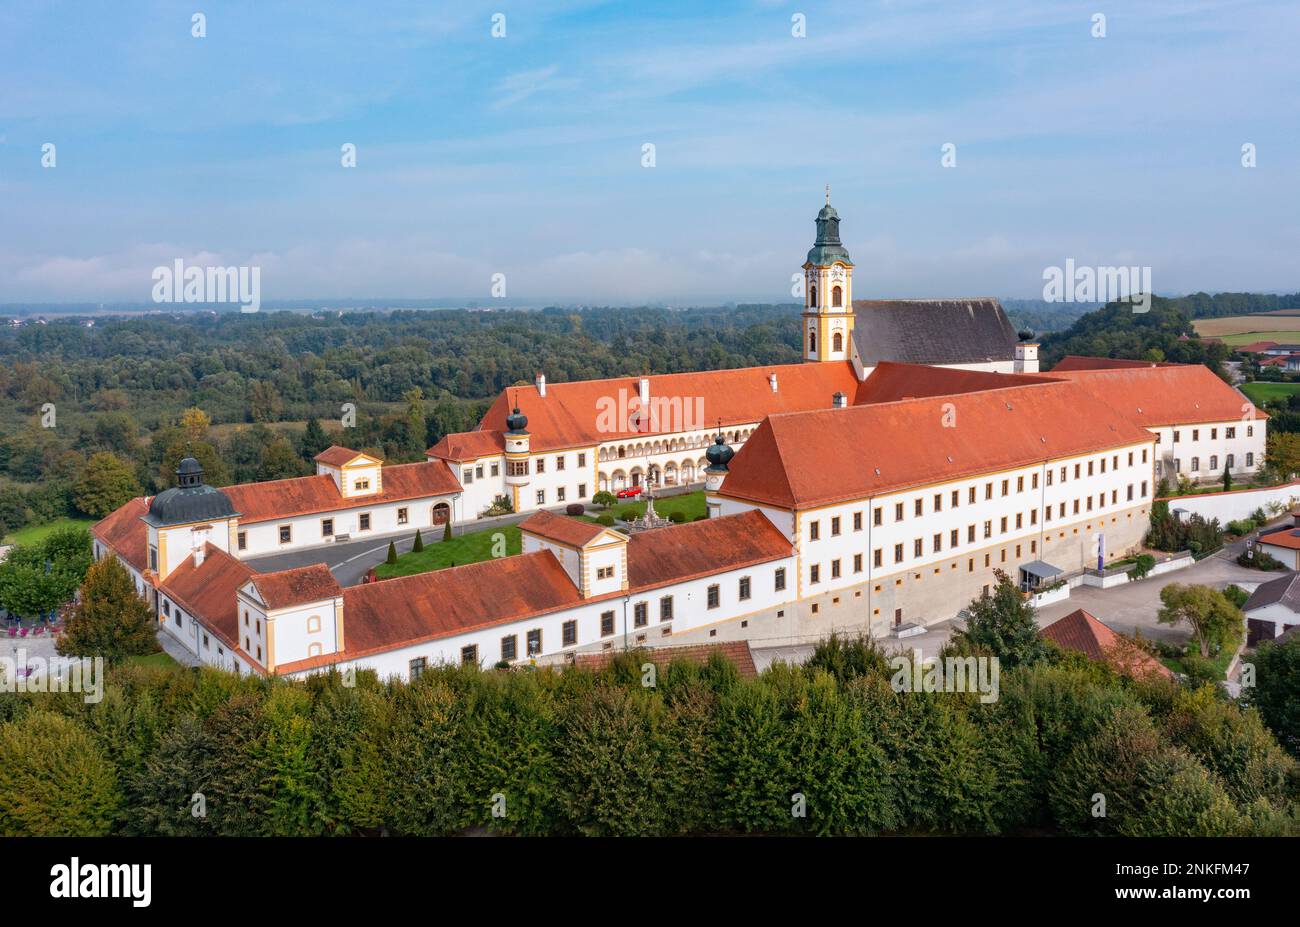 Austria, Upper Austria, Reichersberg, Drone view of Augustiner-Chorherrenstift Reichersberg monastery Stock Photo